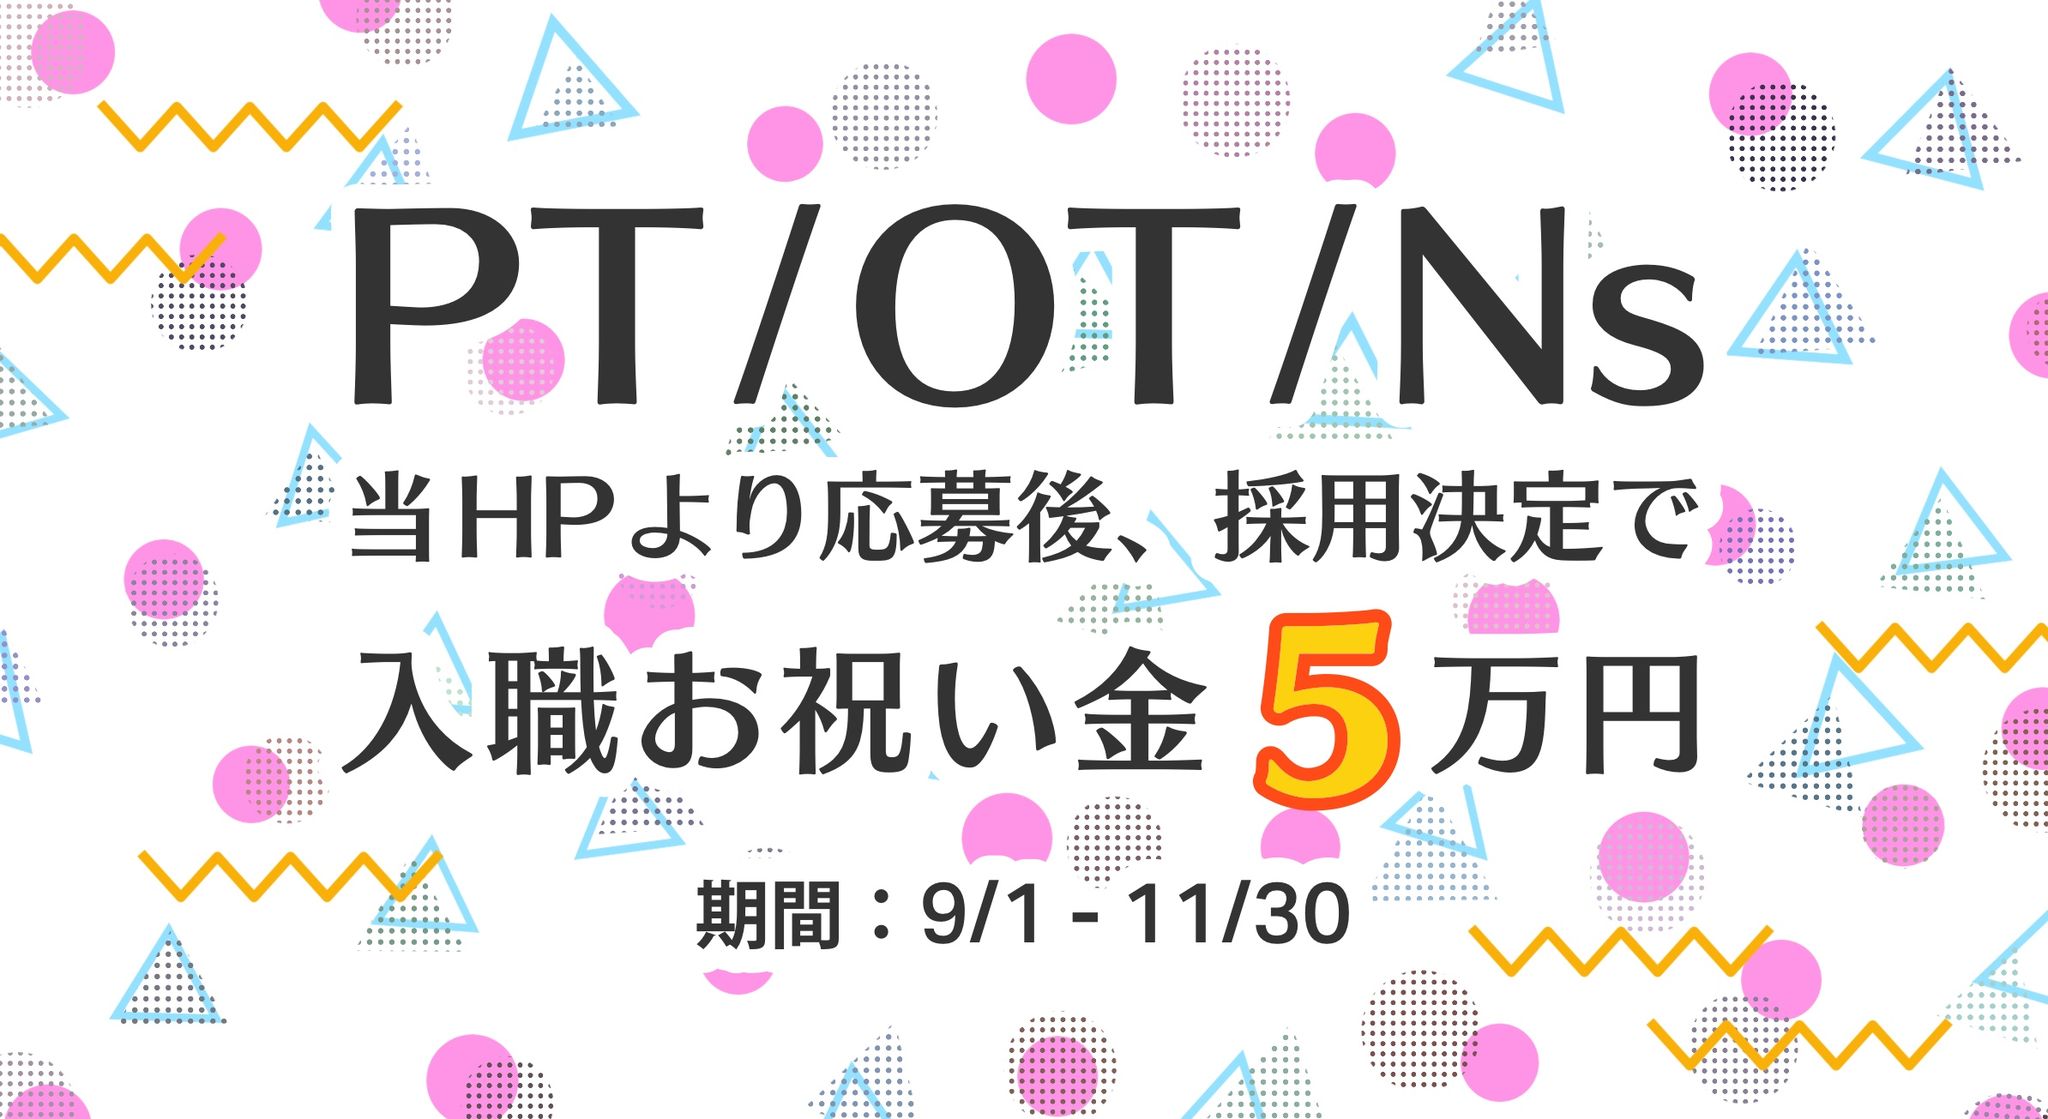 PT/OT/Ns 当HPより応募後、採用決定で入職お祝い金5万円